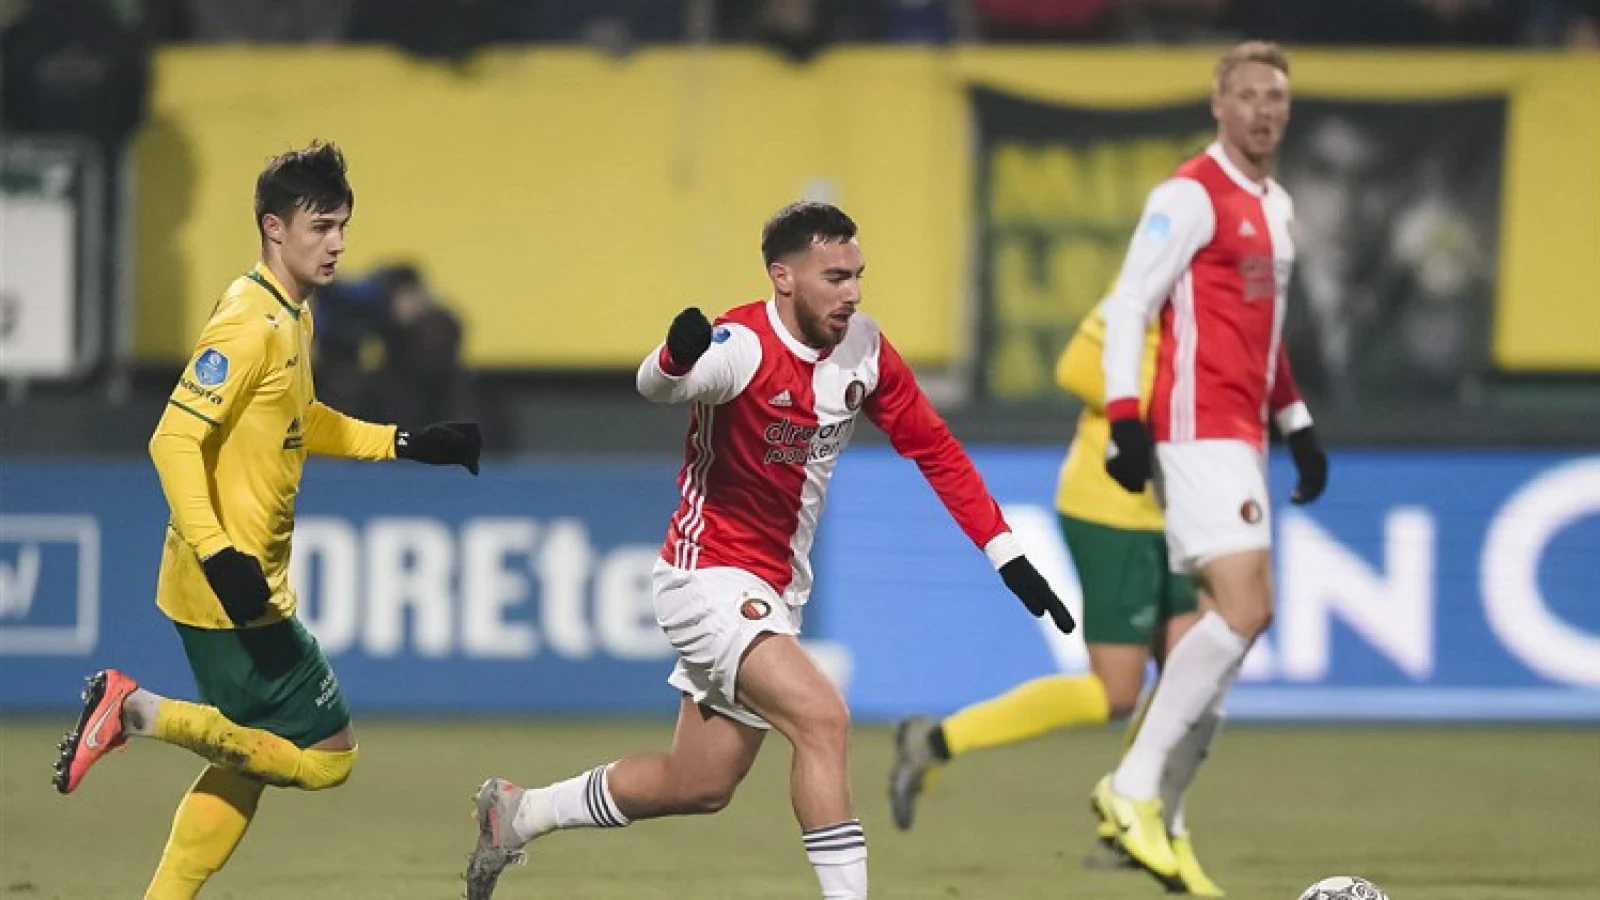 LIVE | Fortuna Sittard - Feyenoord 1-2 | Einde wedstrijd